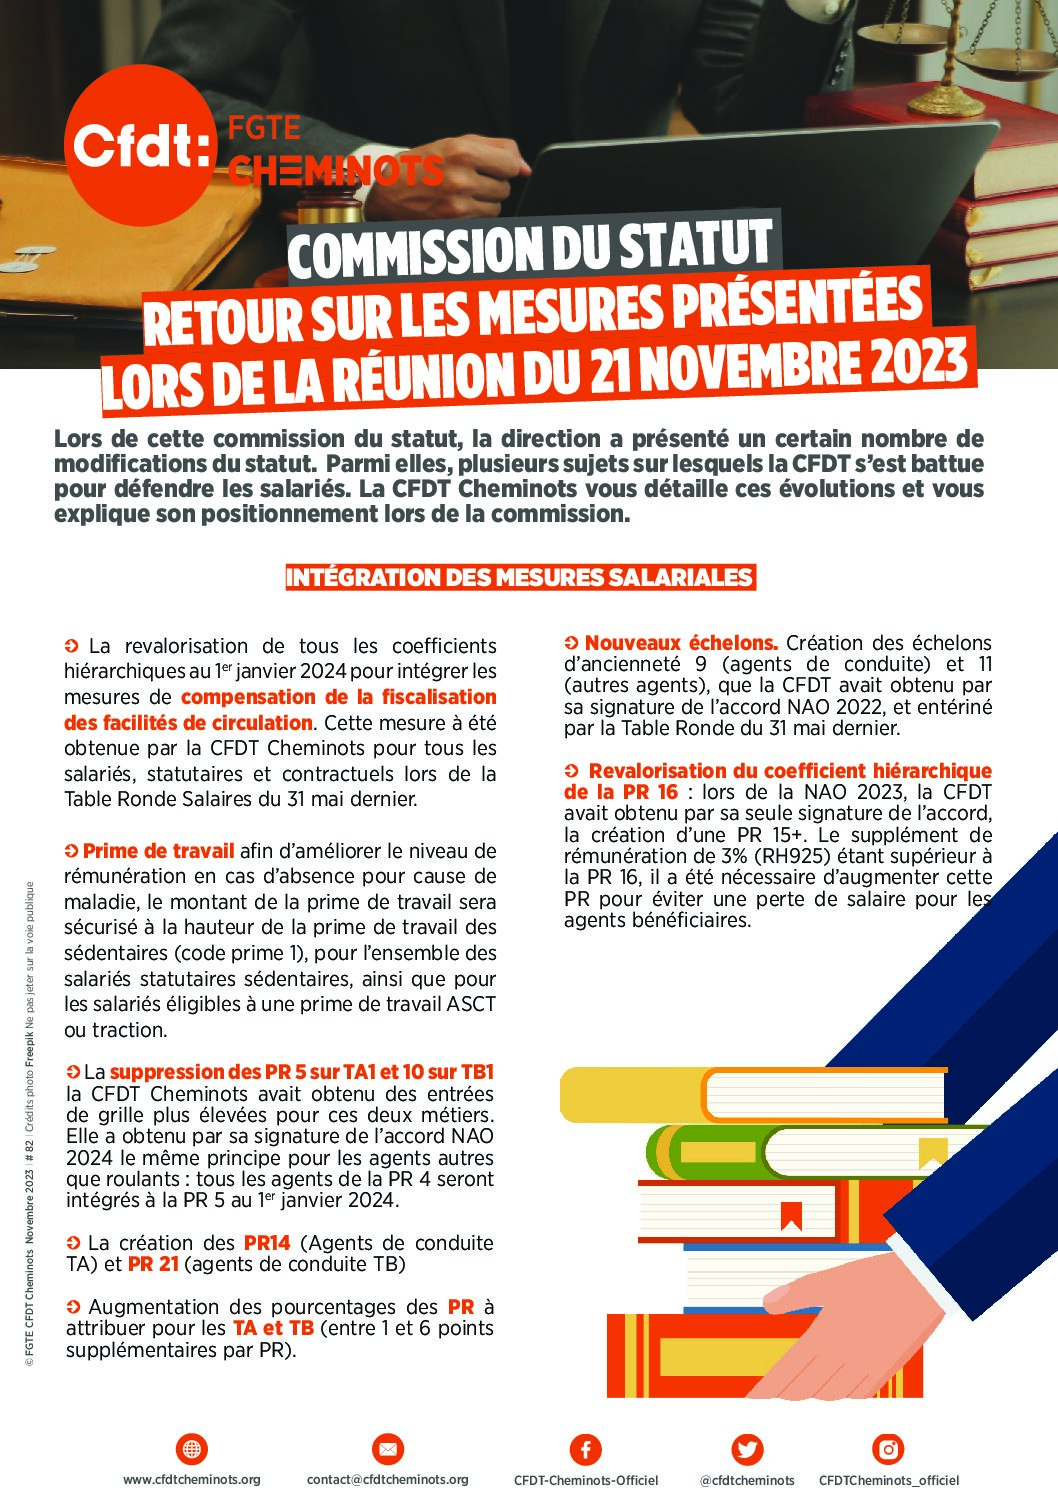 Commission du statut: retour sur les mesures présentées